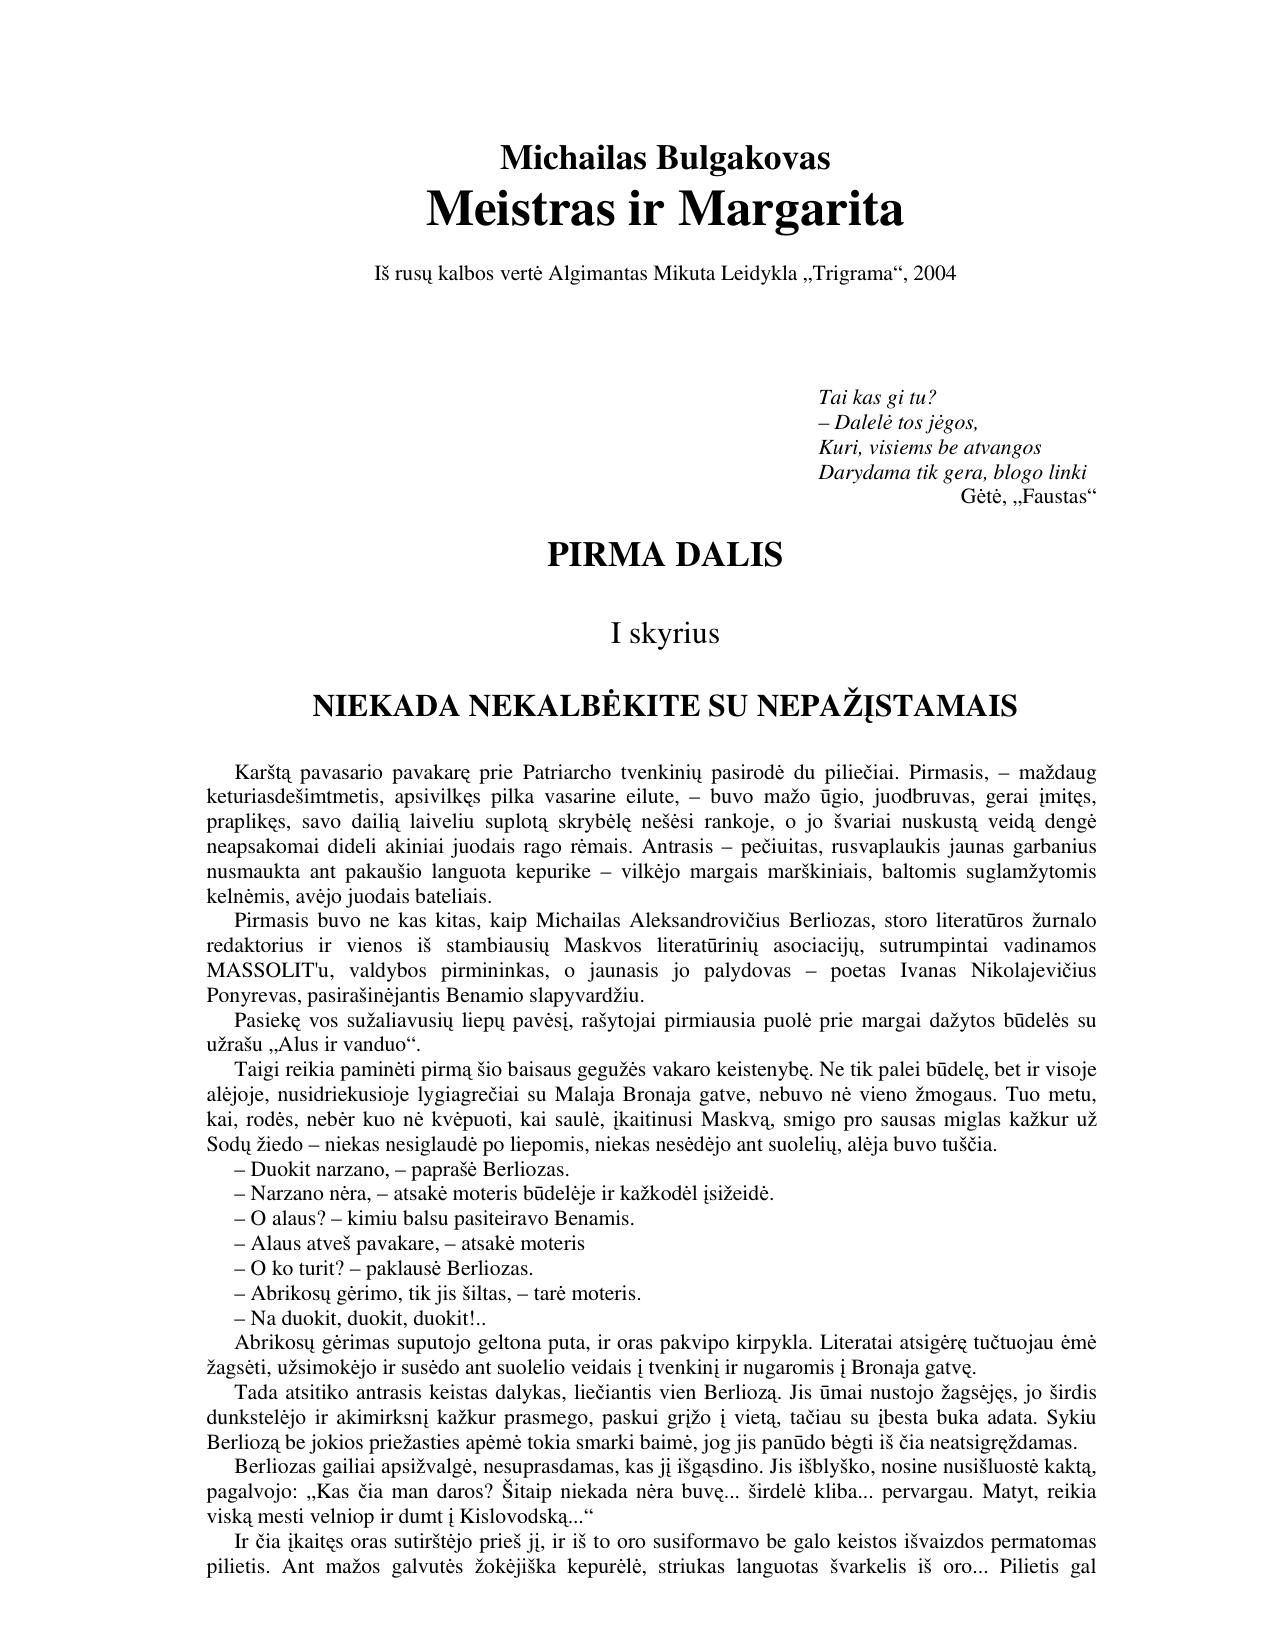 Michailas Bulgakovas - Meistras ir margarita